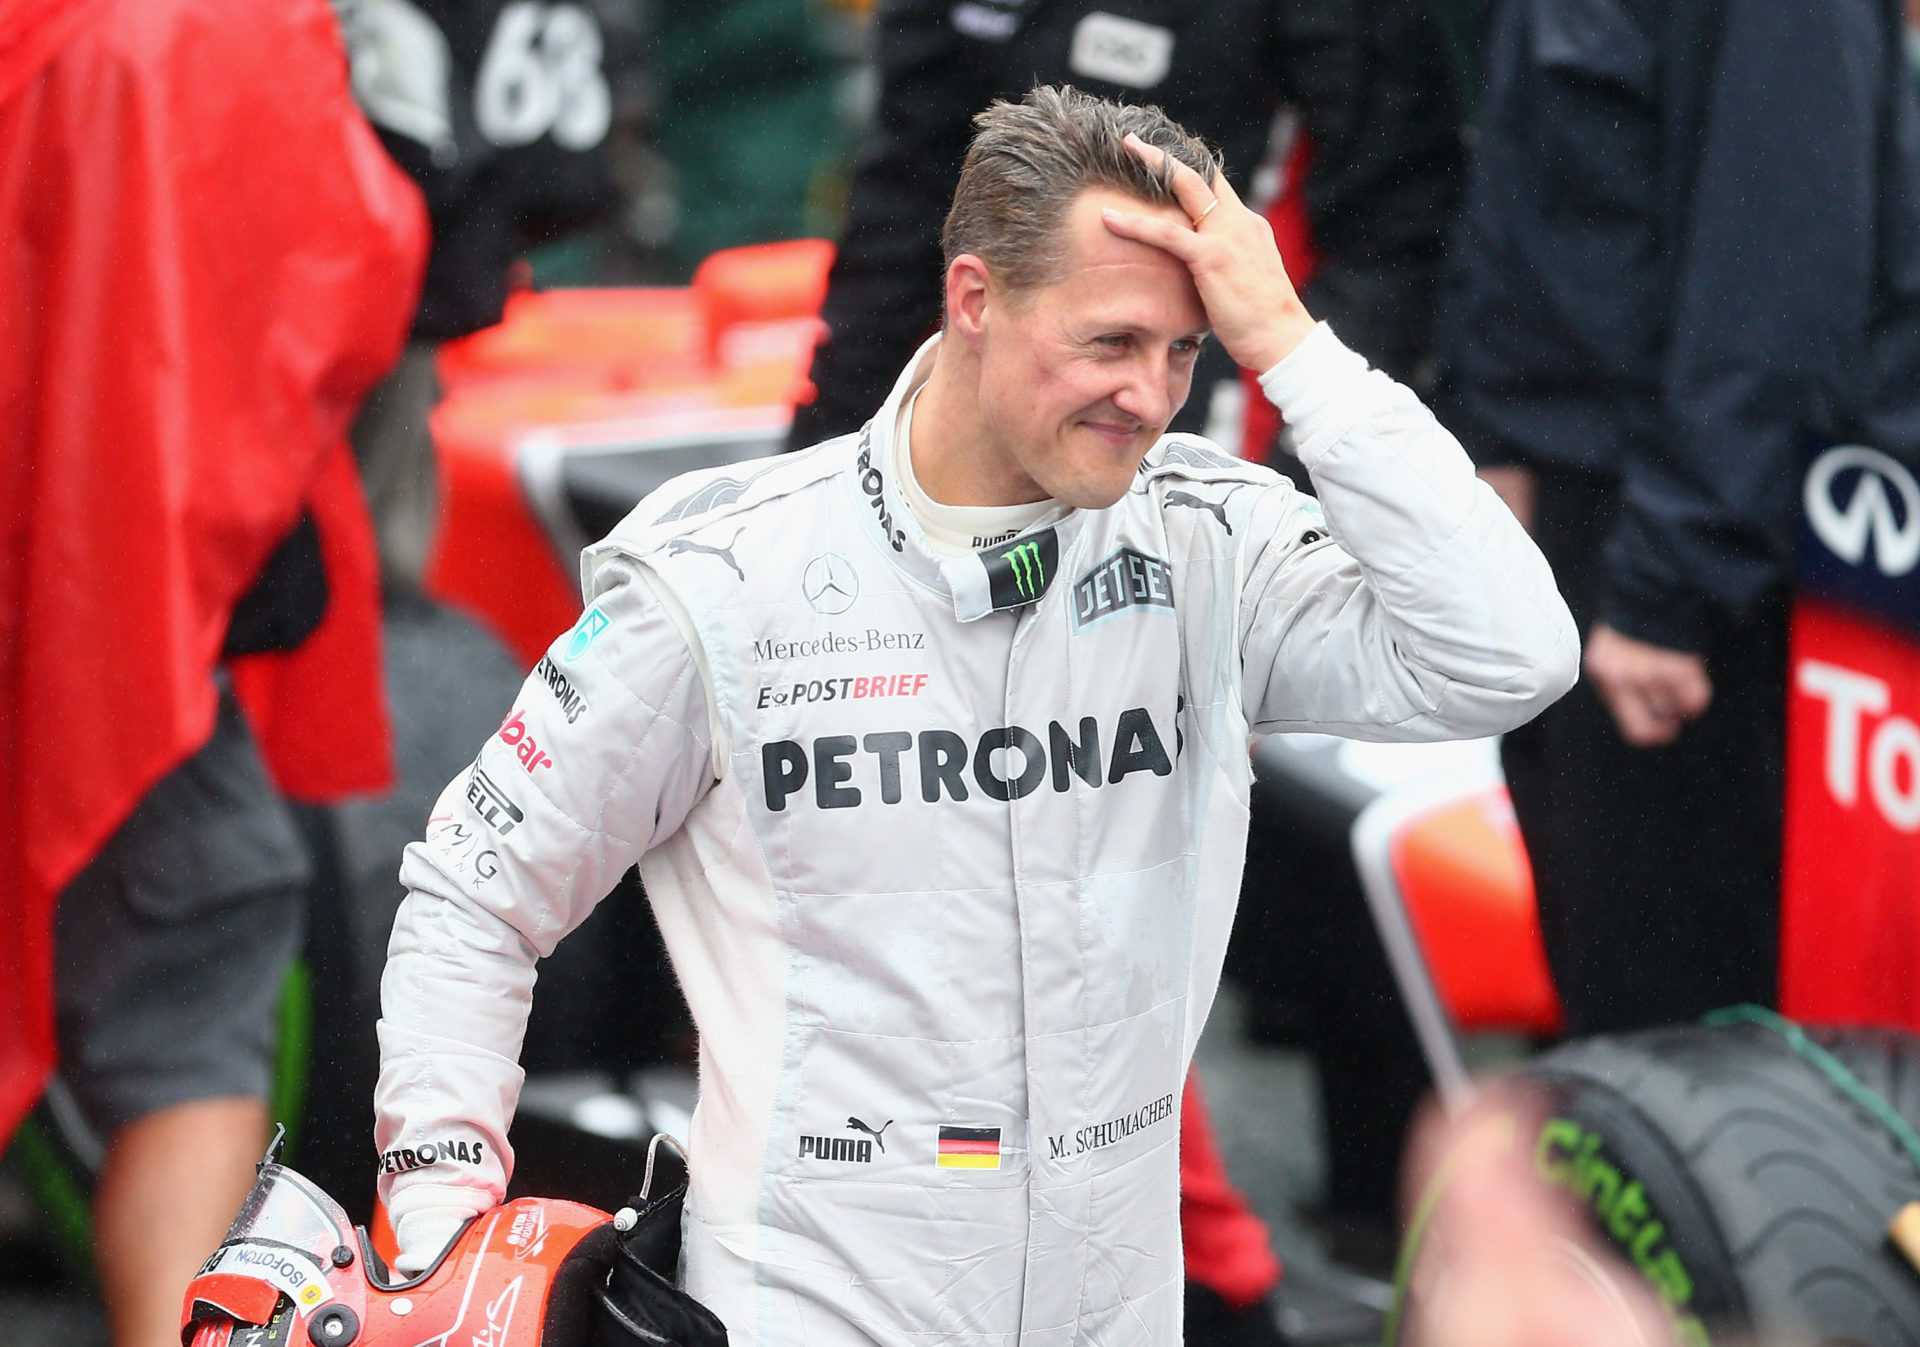 L'ancien vice-président révèle que Michael Schumacher pourrait encore remporter des titres mondiaux avec Mercedes